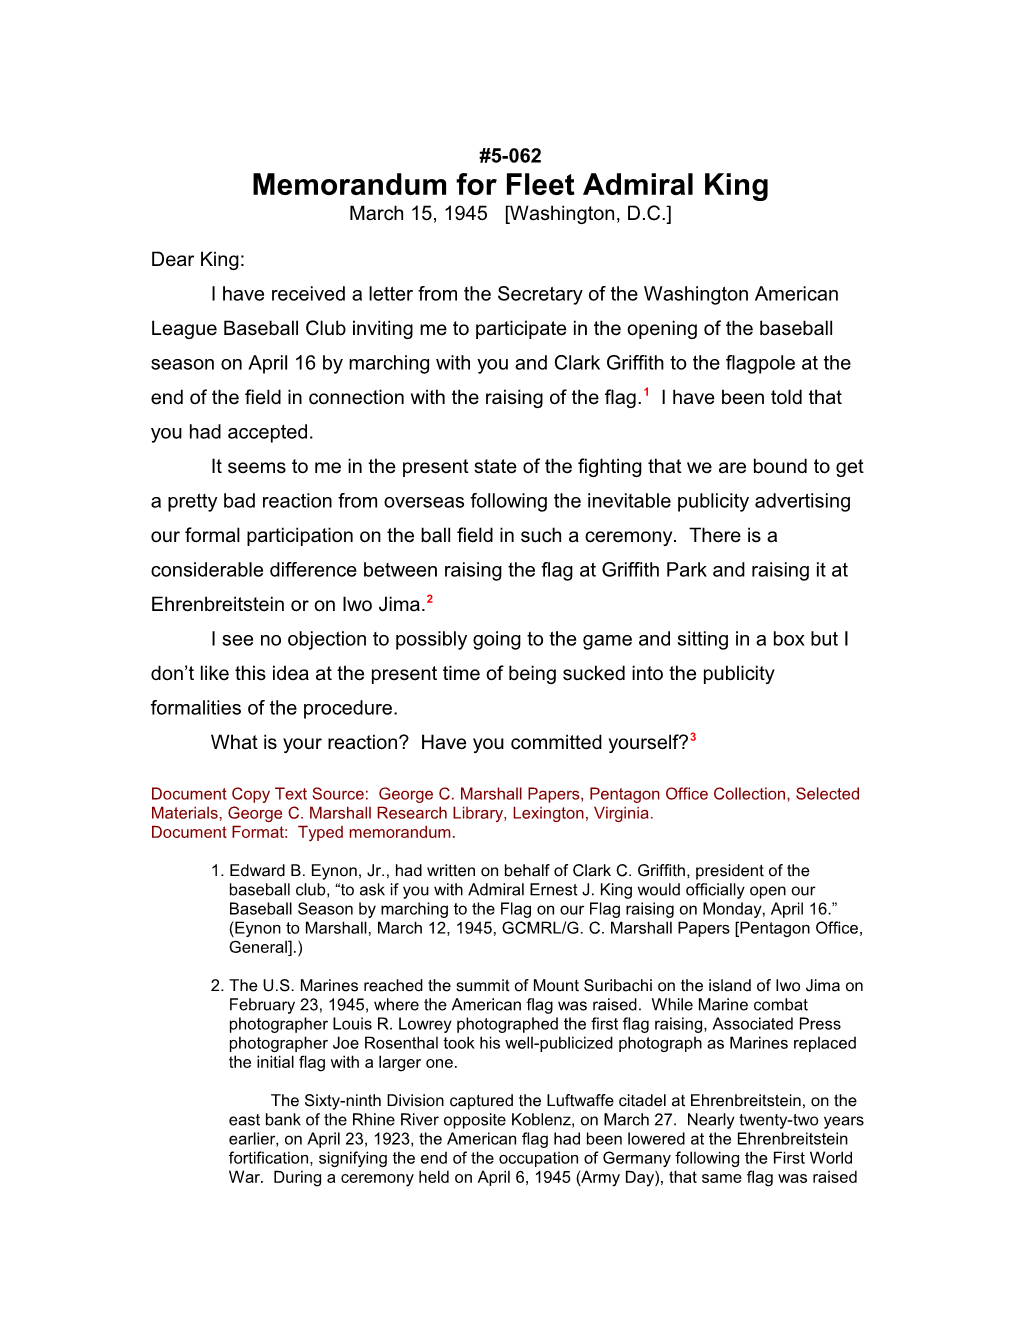 Memorandum for Fleet Admiral King